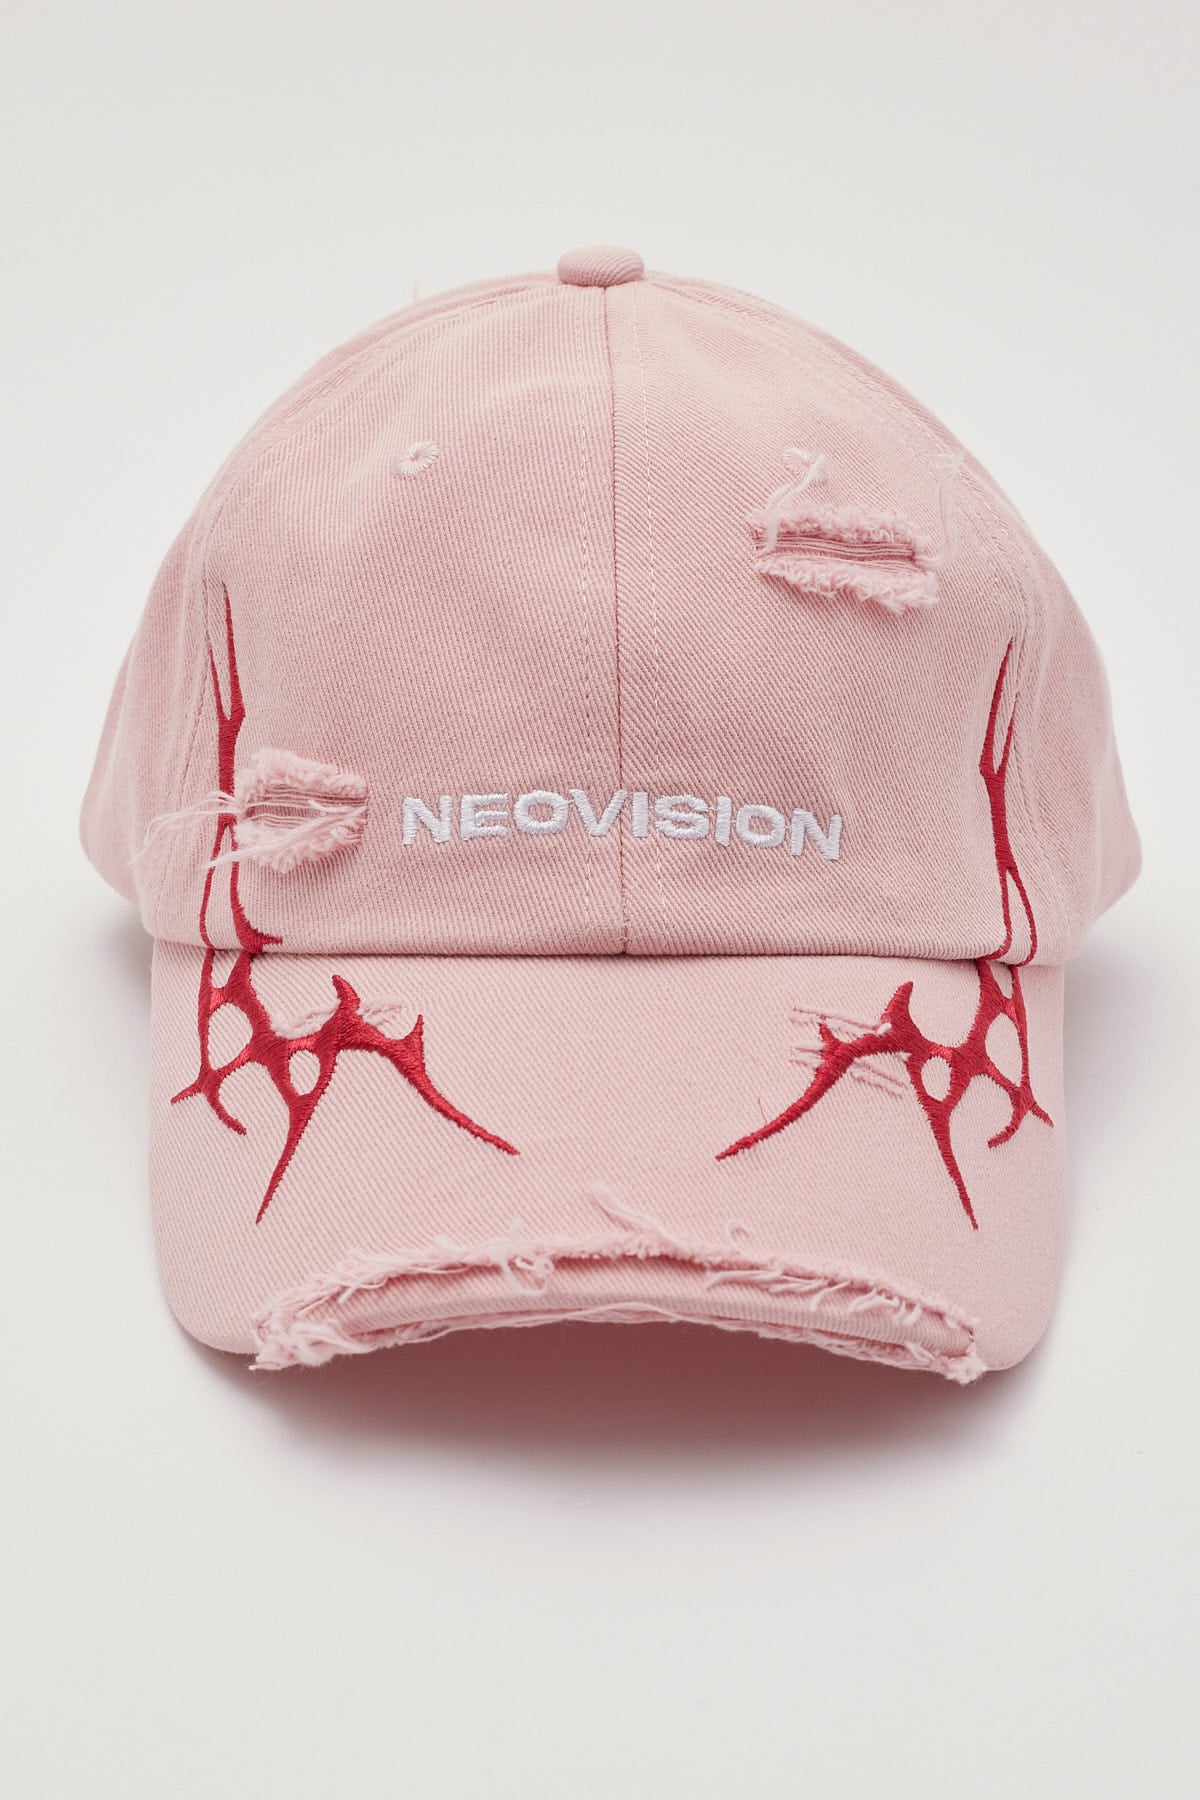 Neovision Platinum Distressed Dad Cap Pink